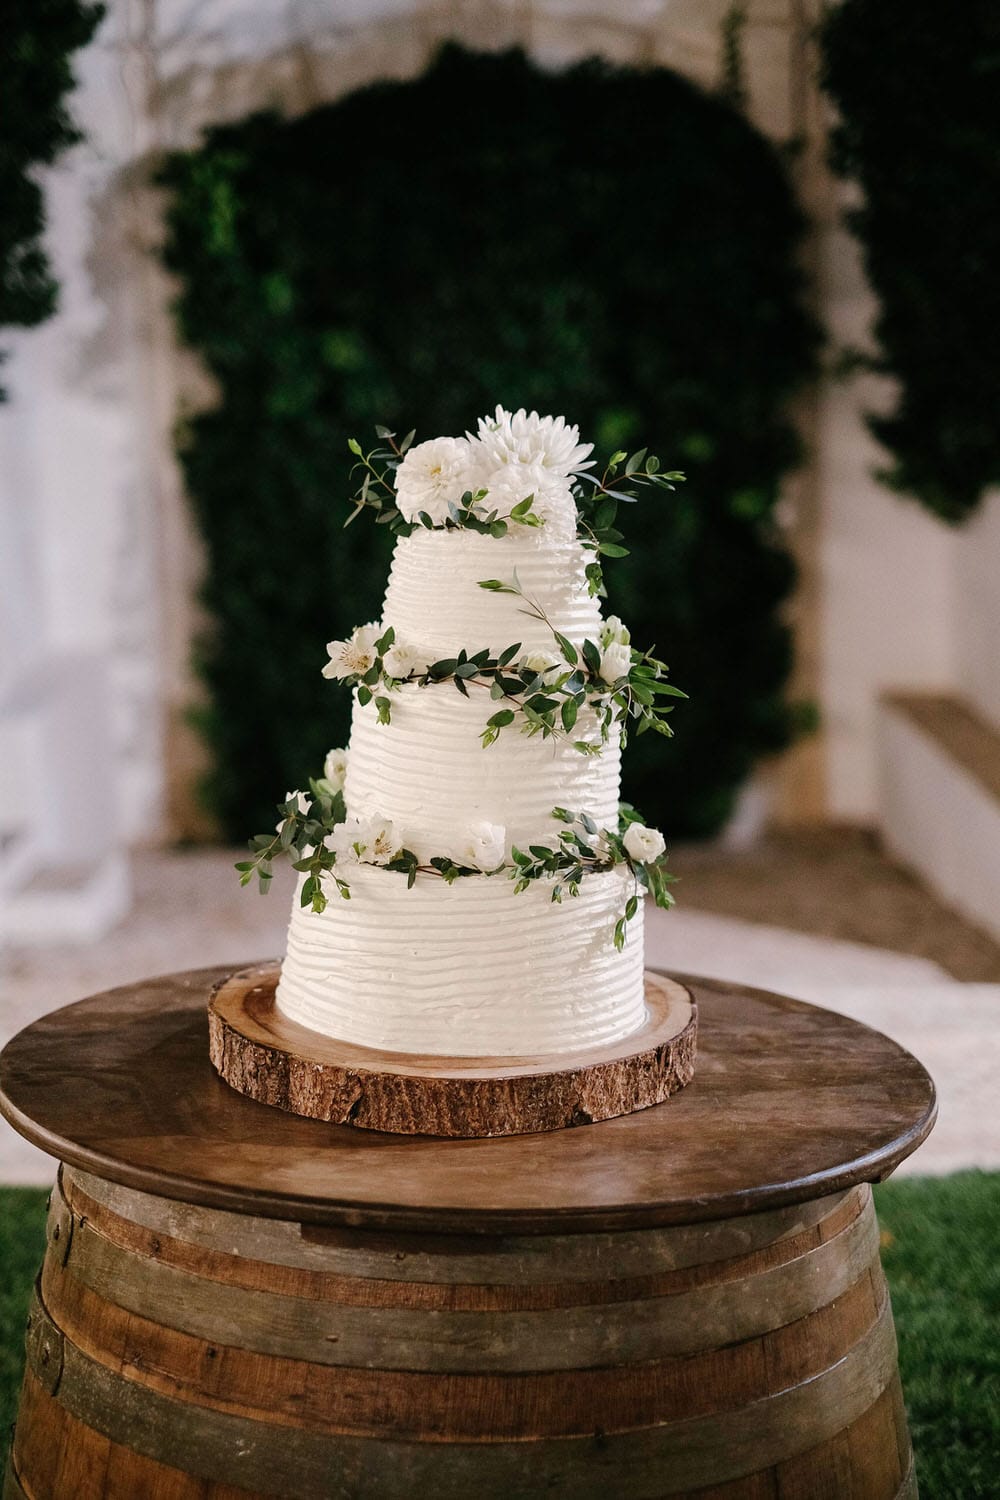 Elegant white wedding cake with stylish green leaves decoration